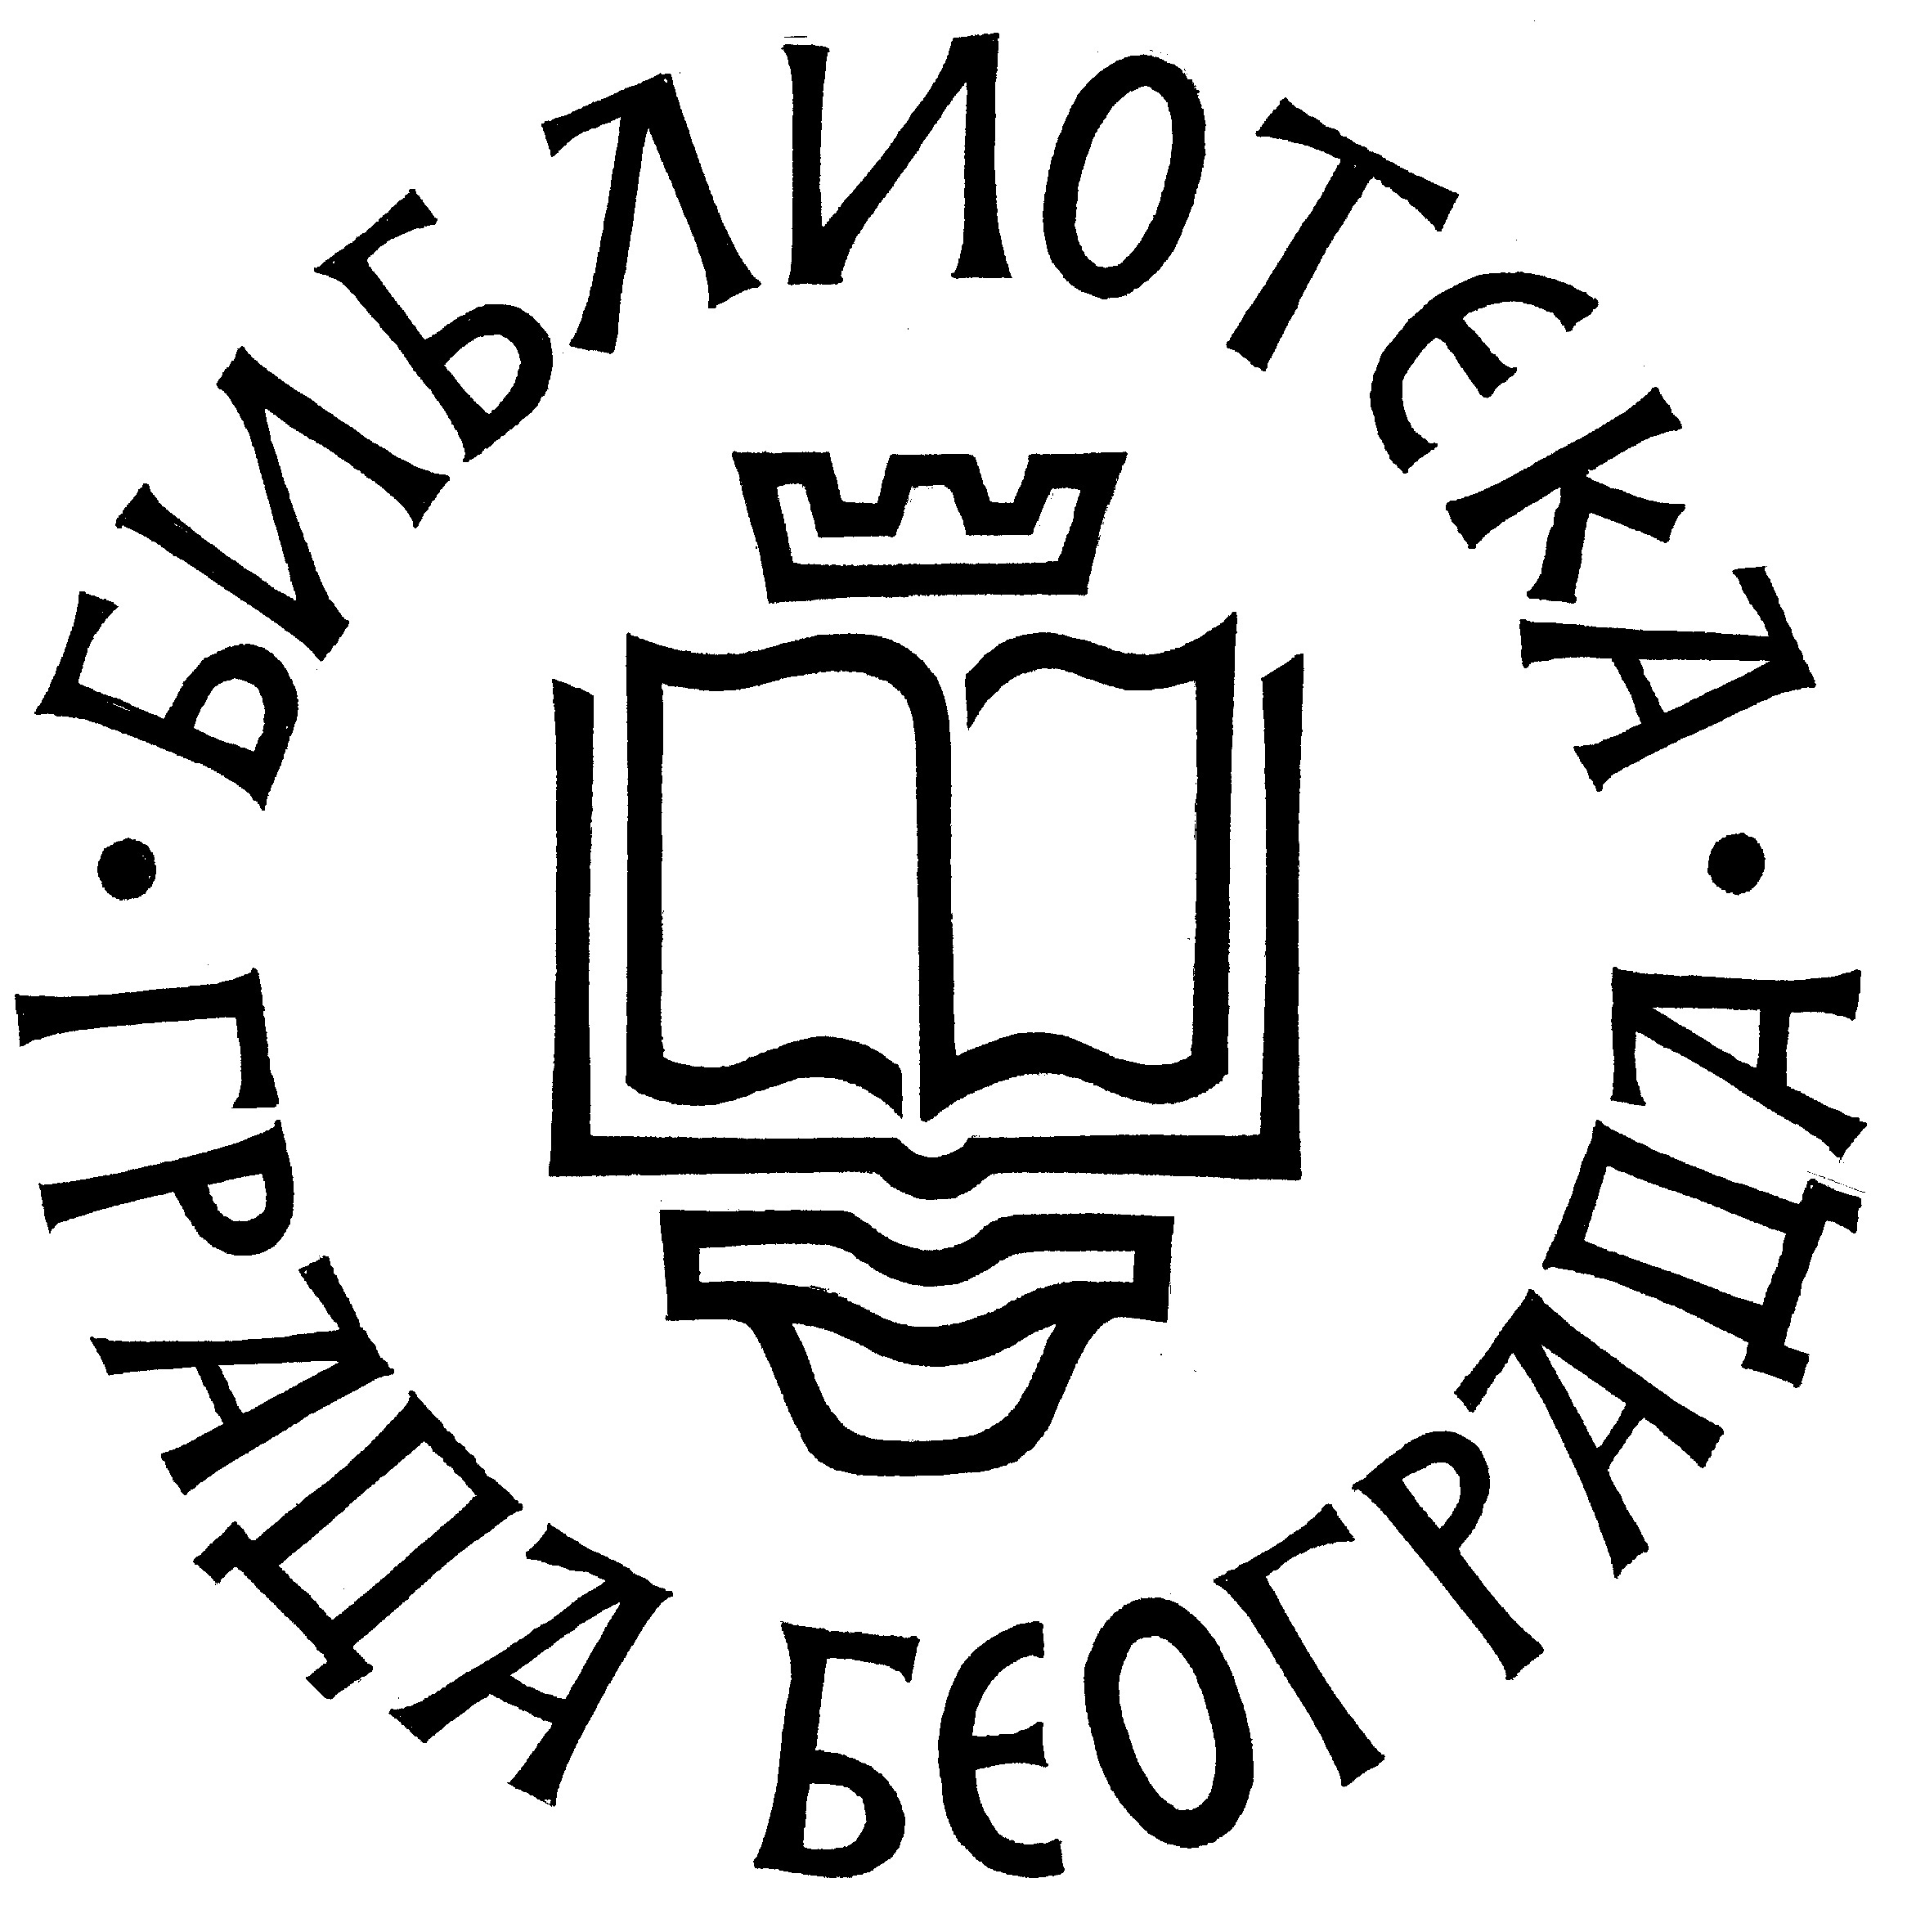 BGB logo